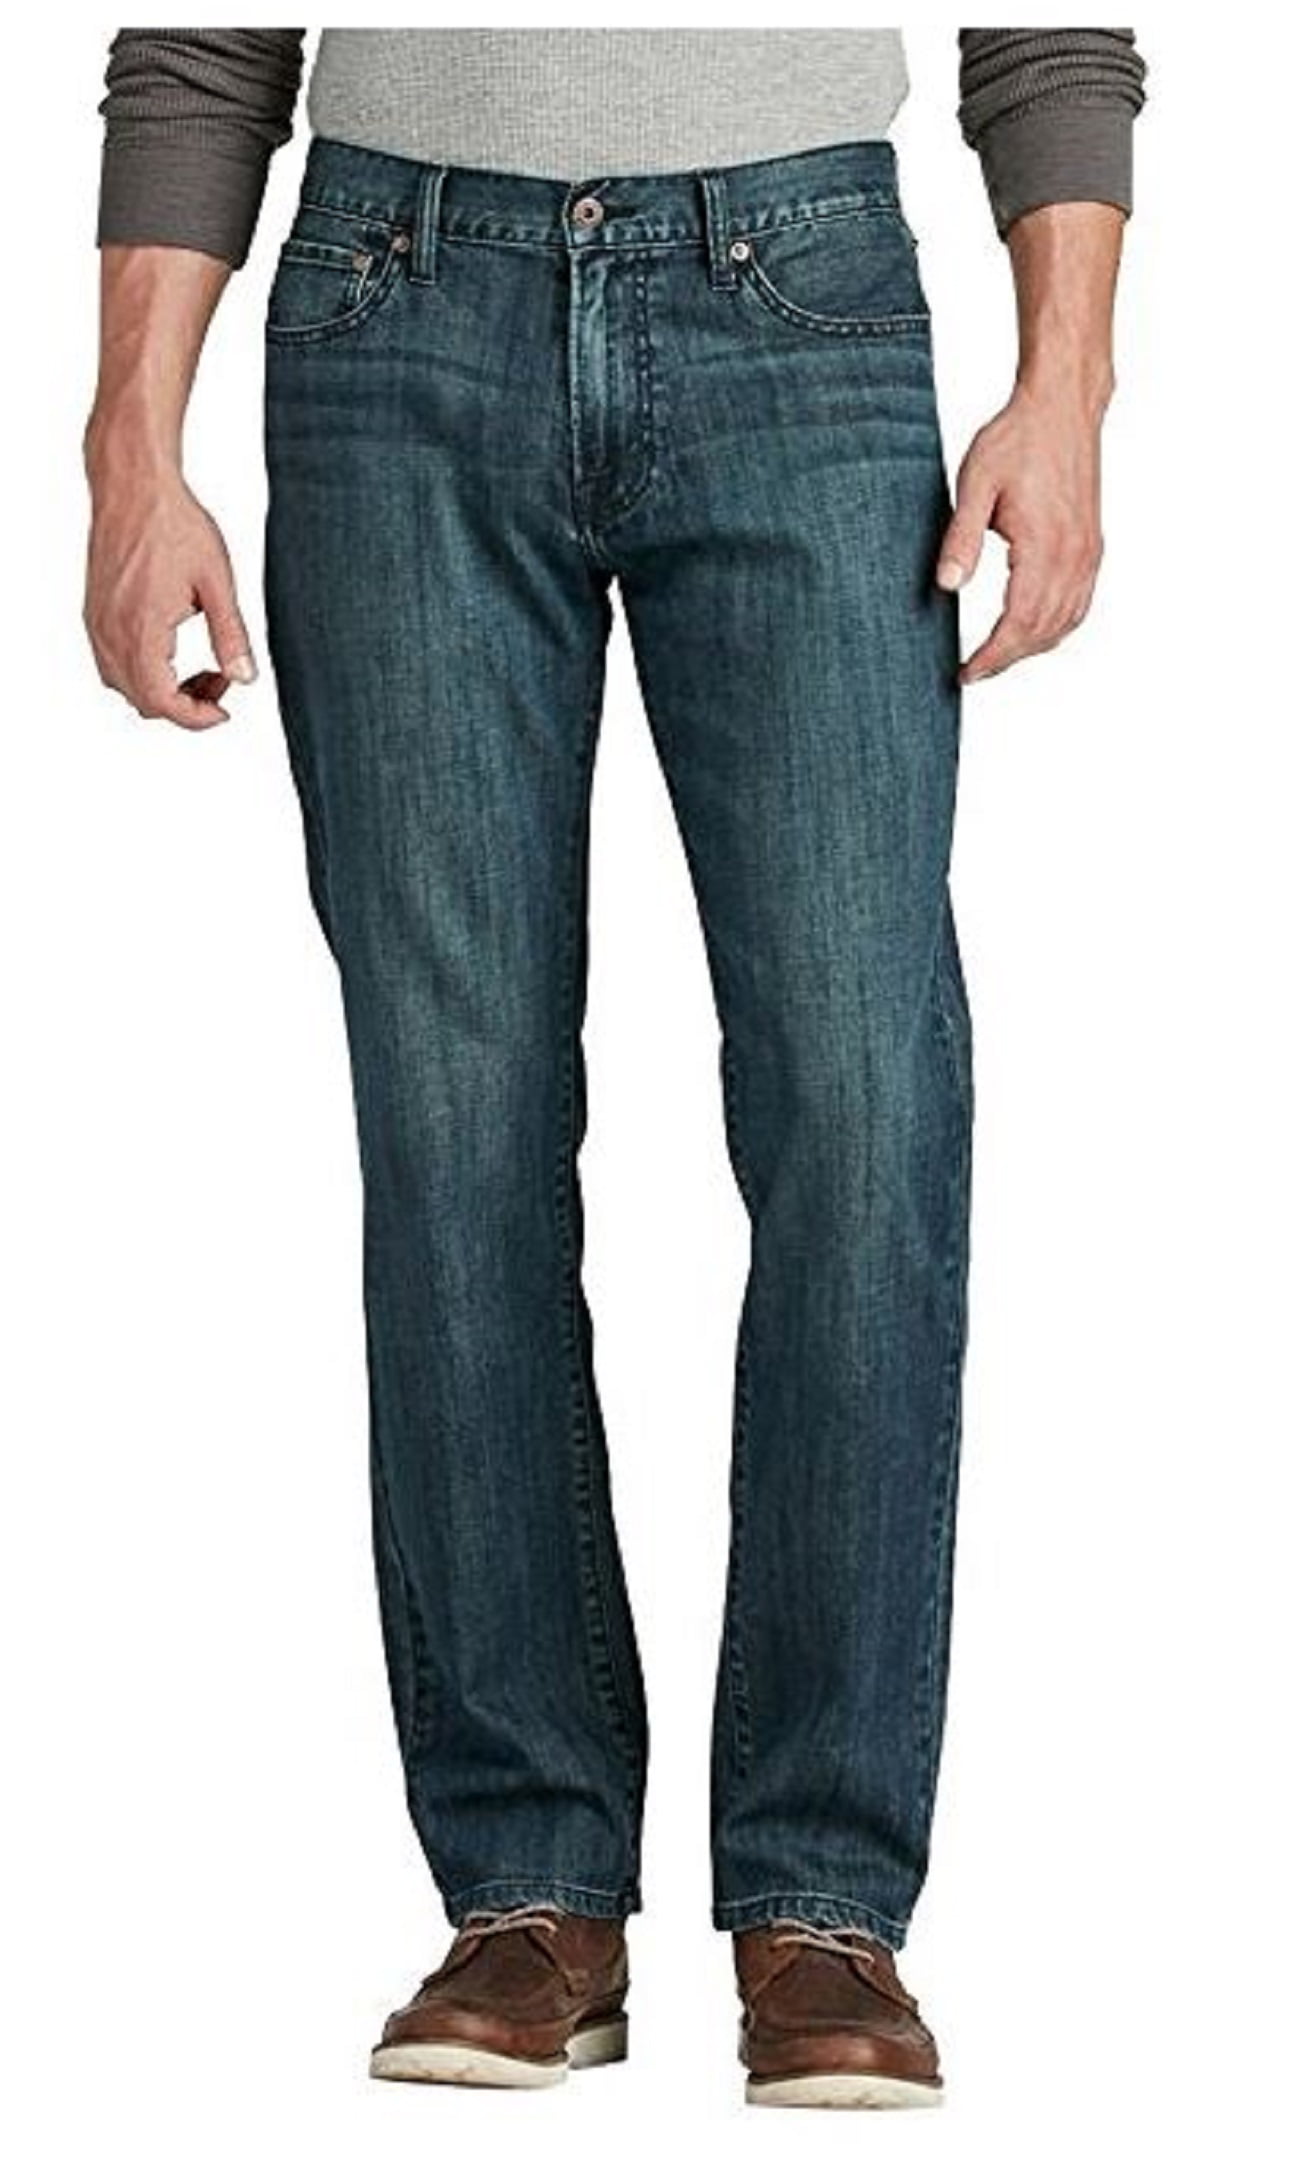 Lucky Brand Men's 221 Straight Jeans Regular Inseam H41